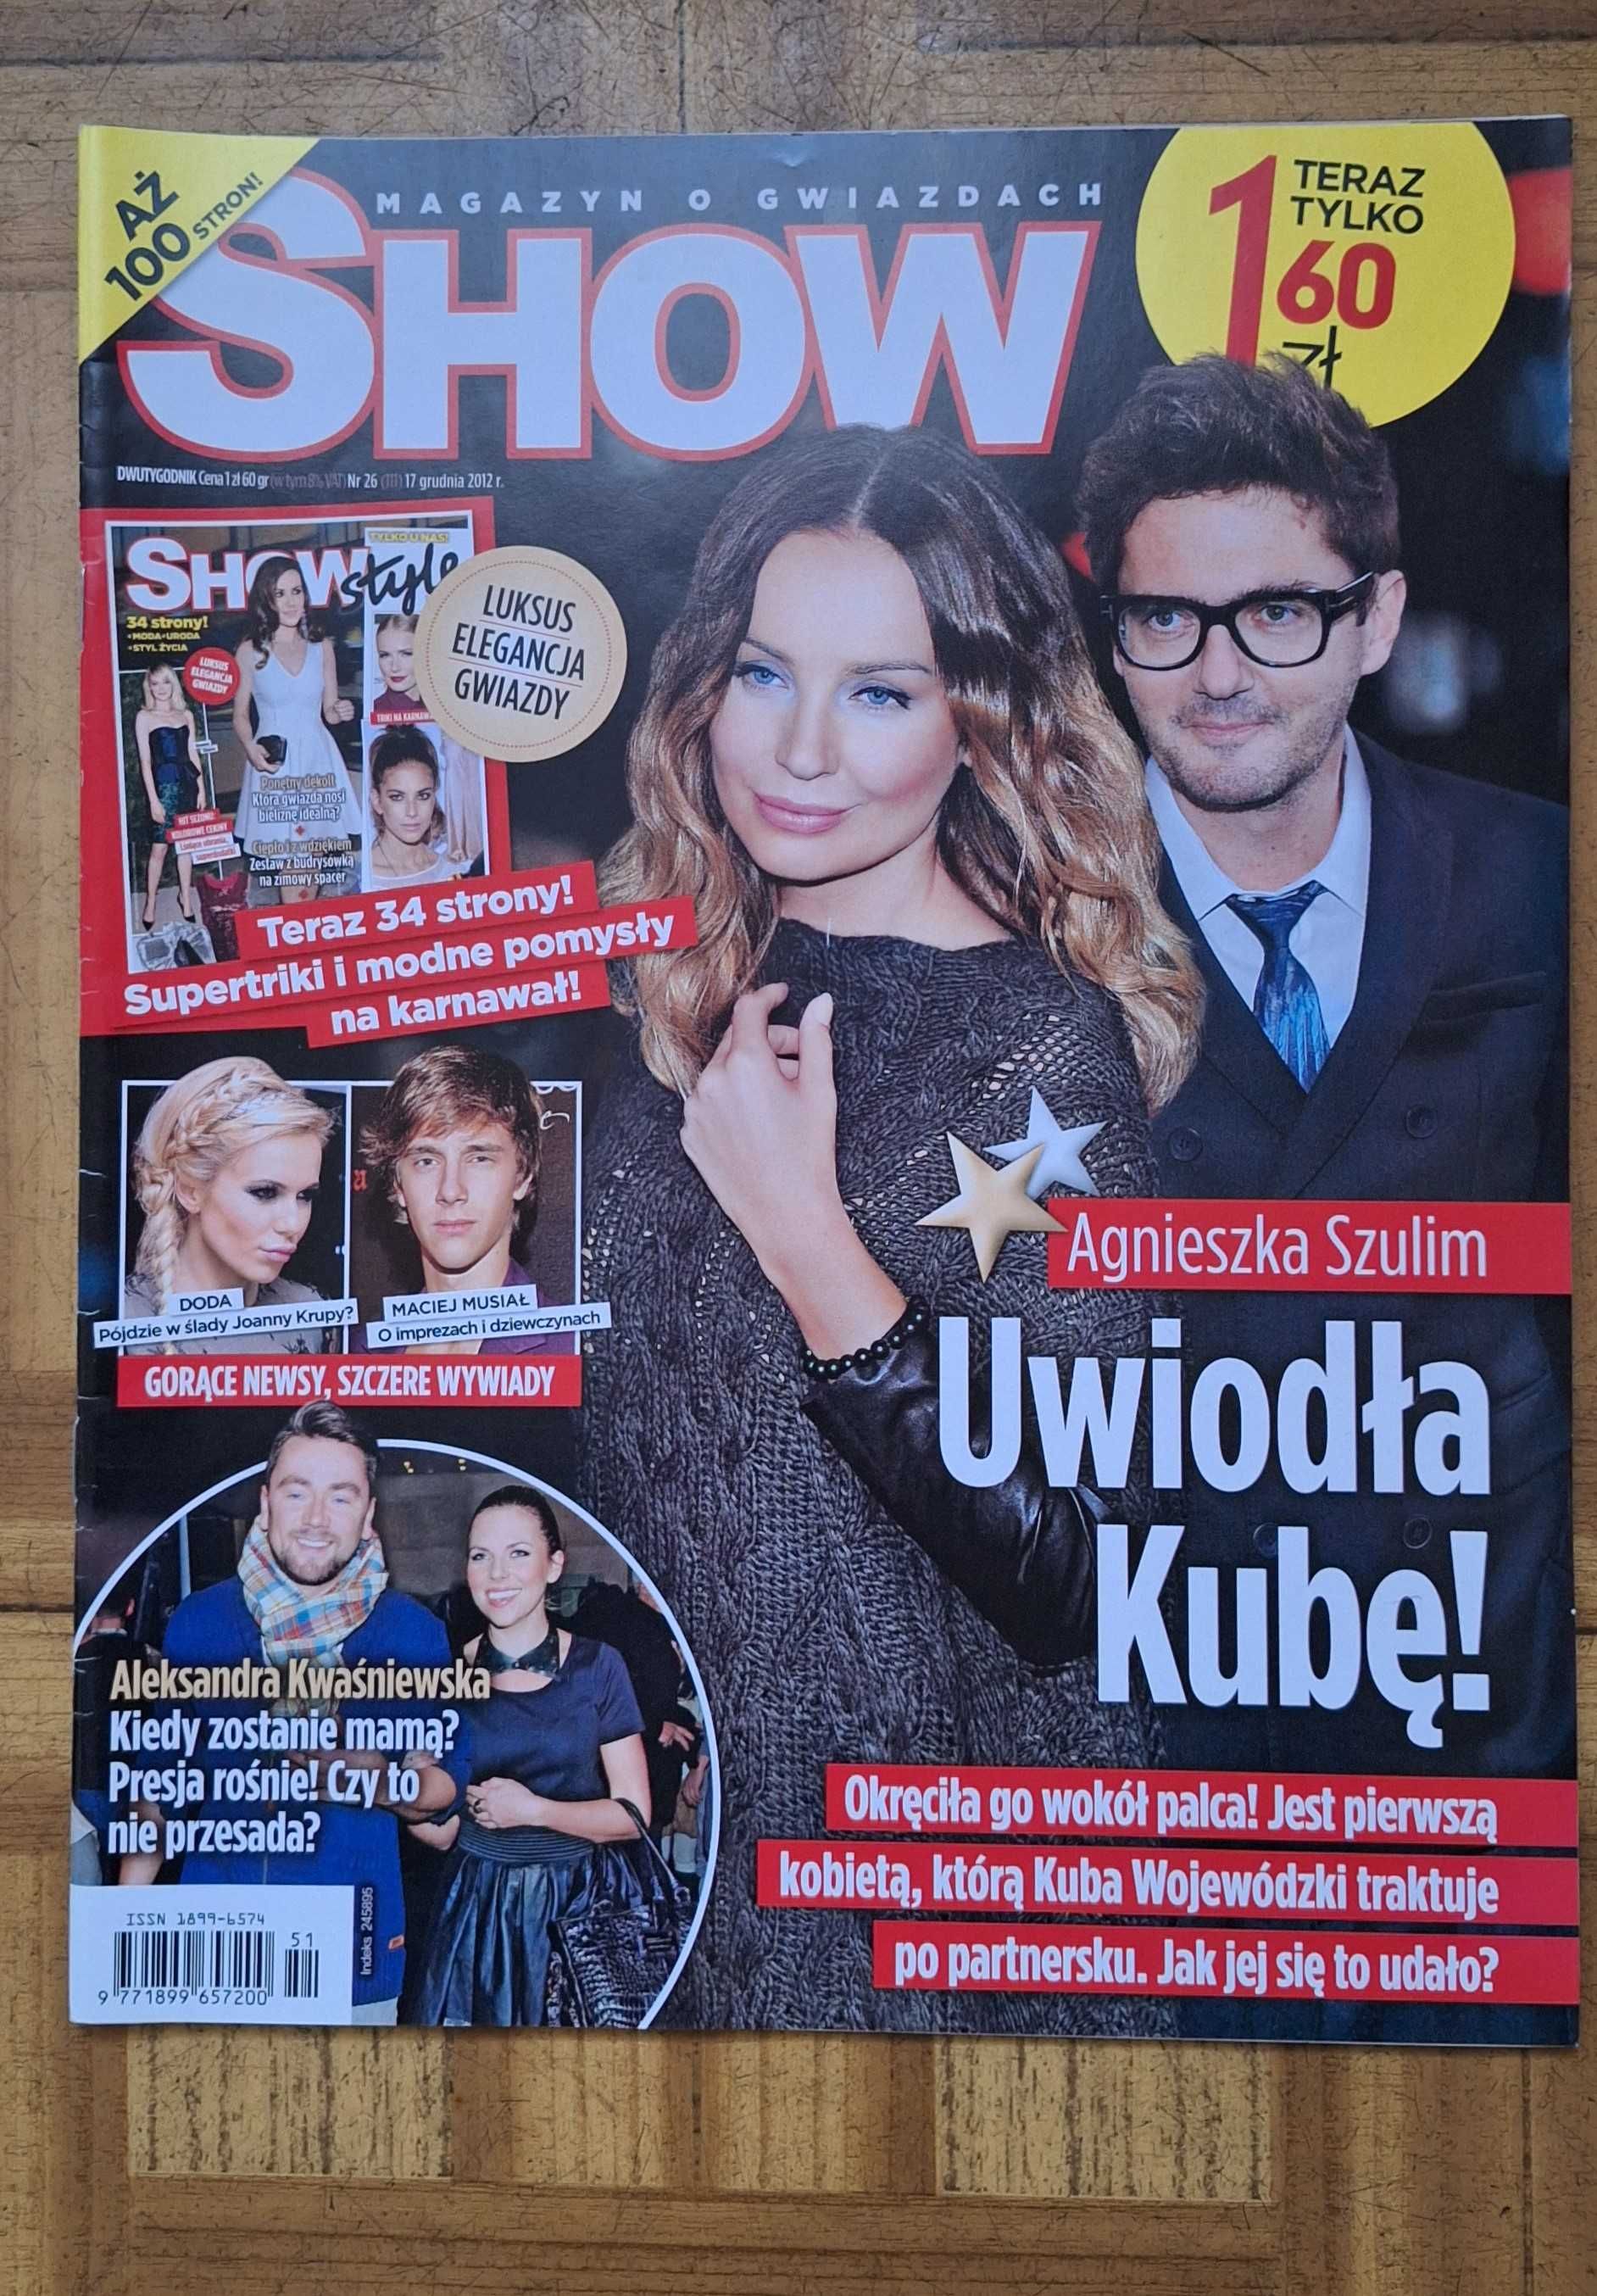 Magazyn o gwiazdach Show Dwutygodnik gazeta